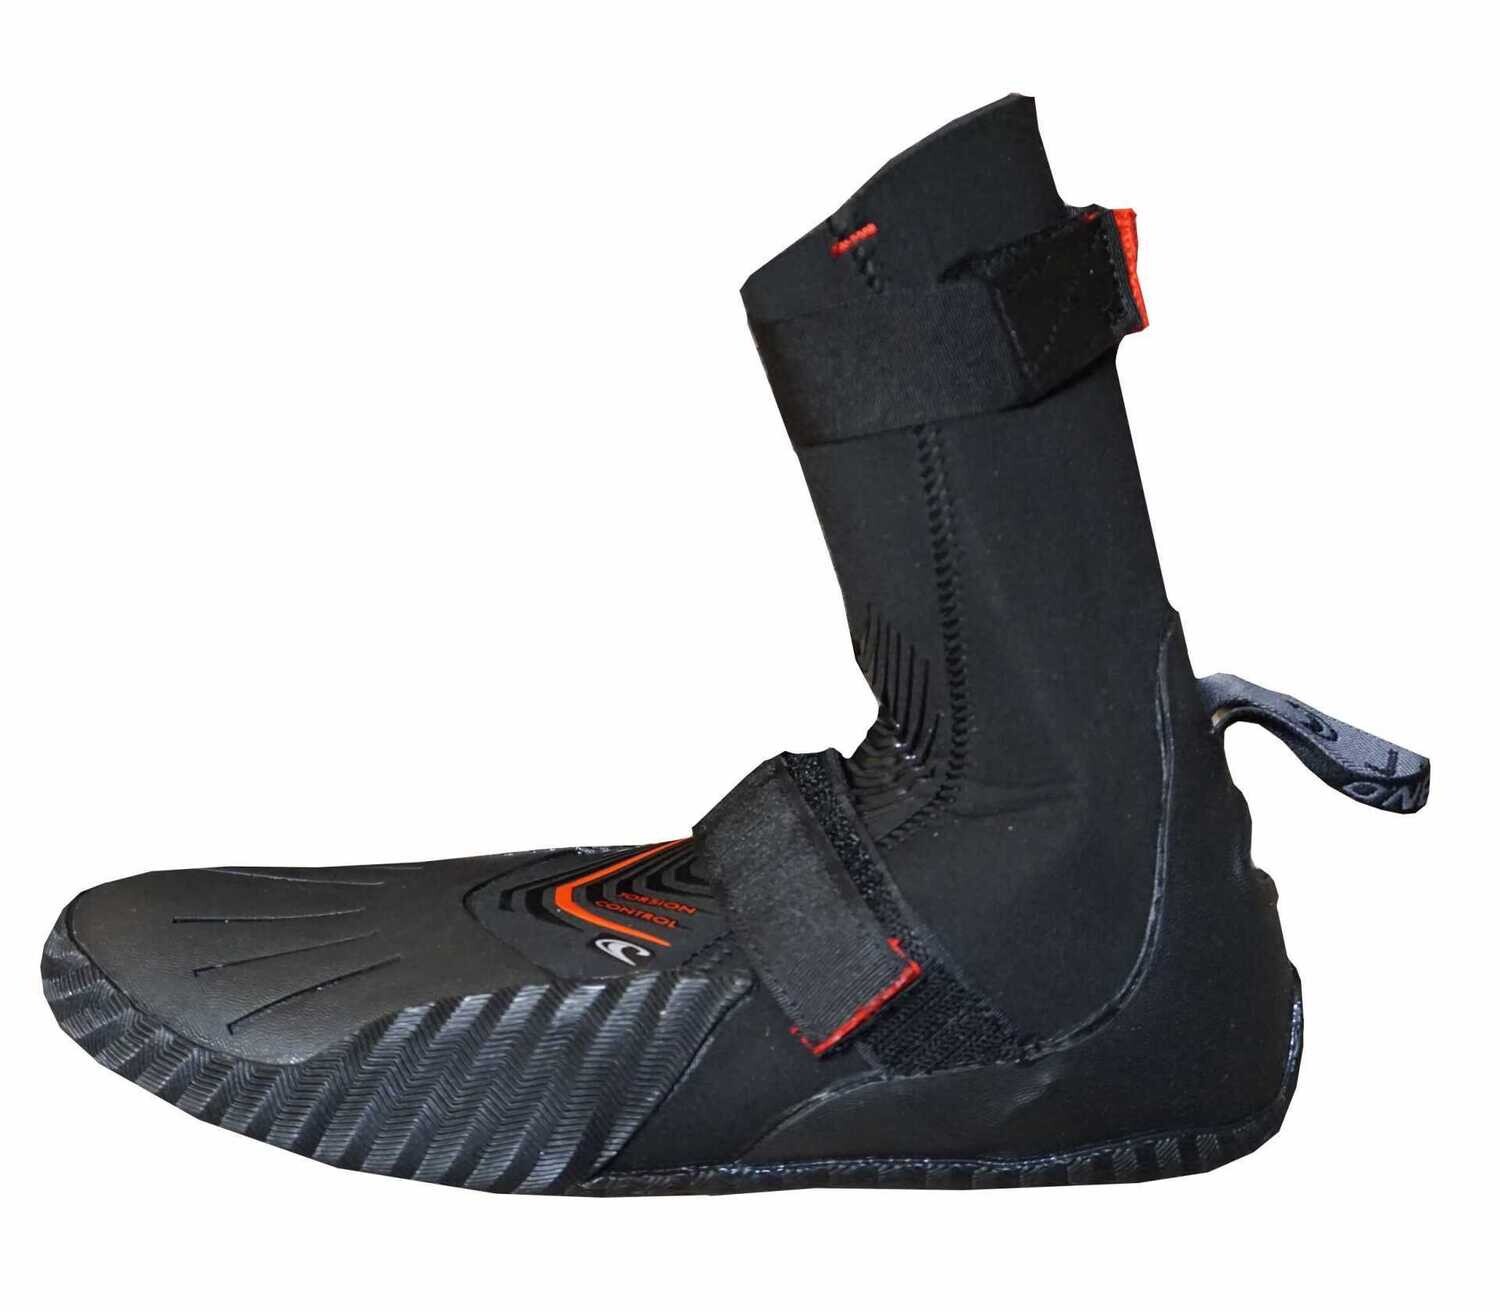 O'Neill Heat 5mm Round Toe Boots, Size: Size UK 4